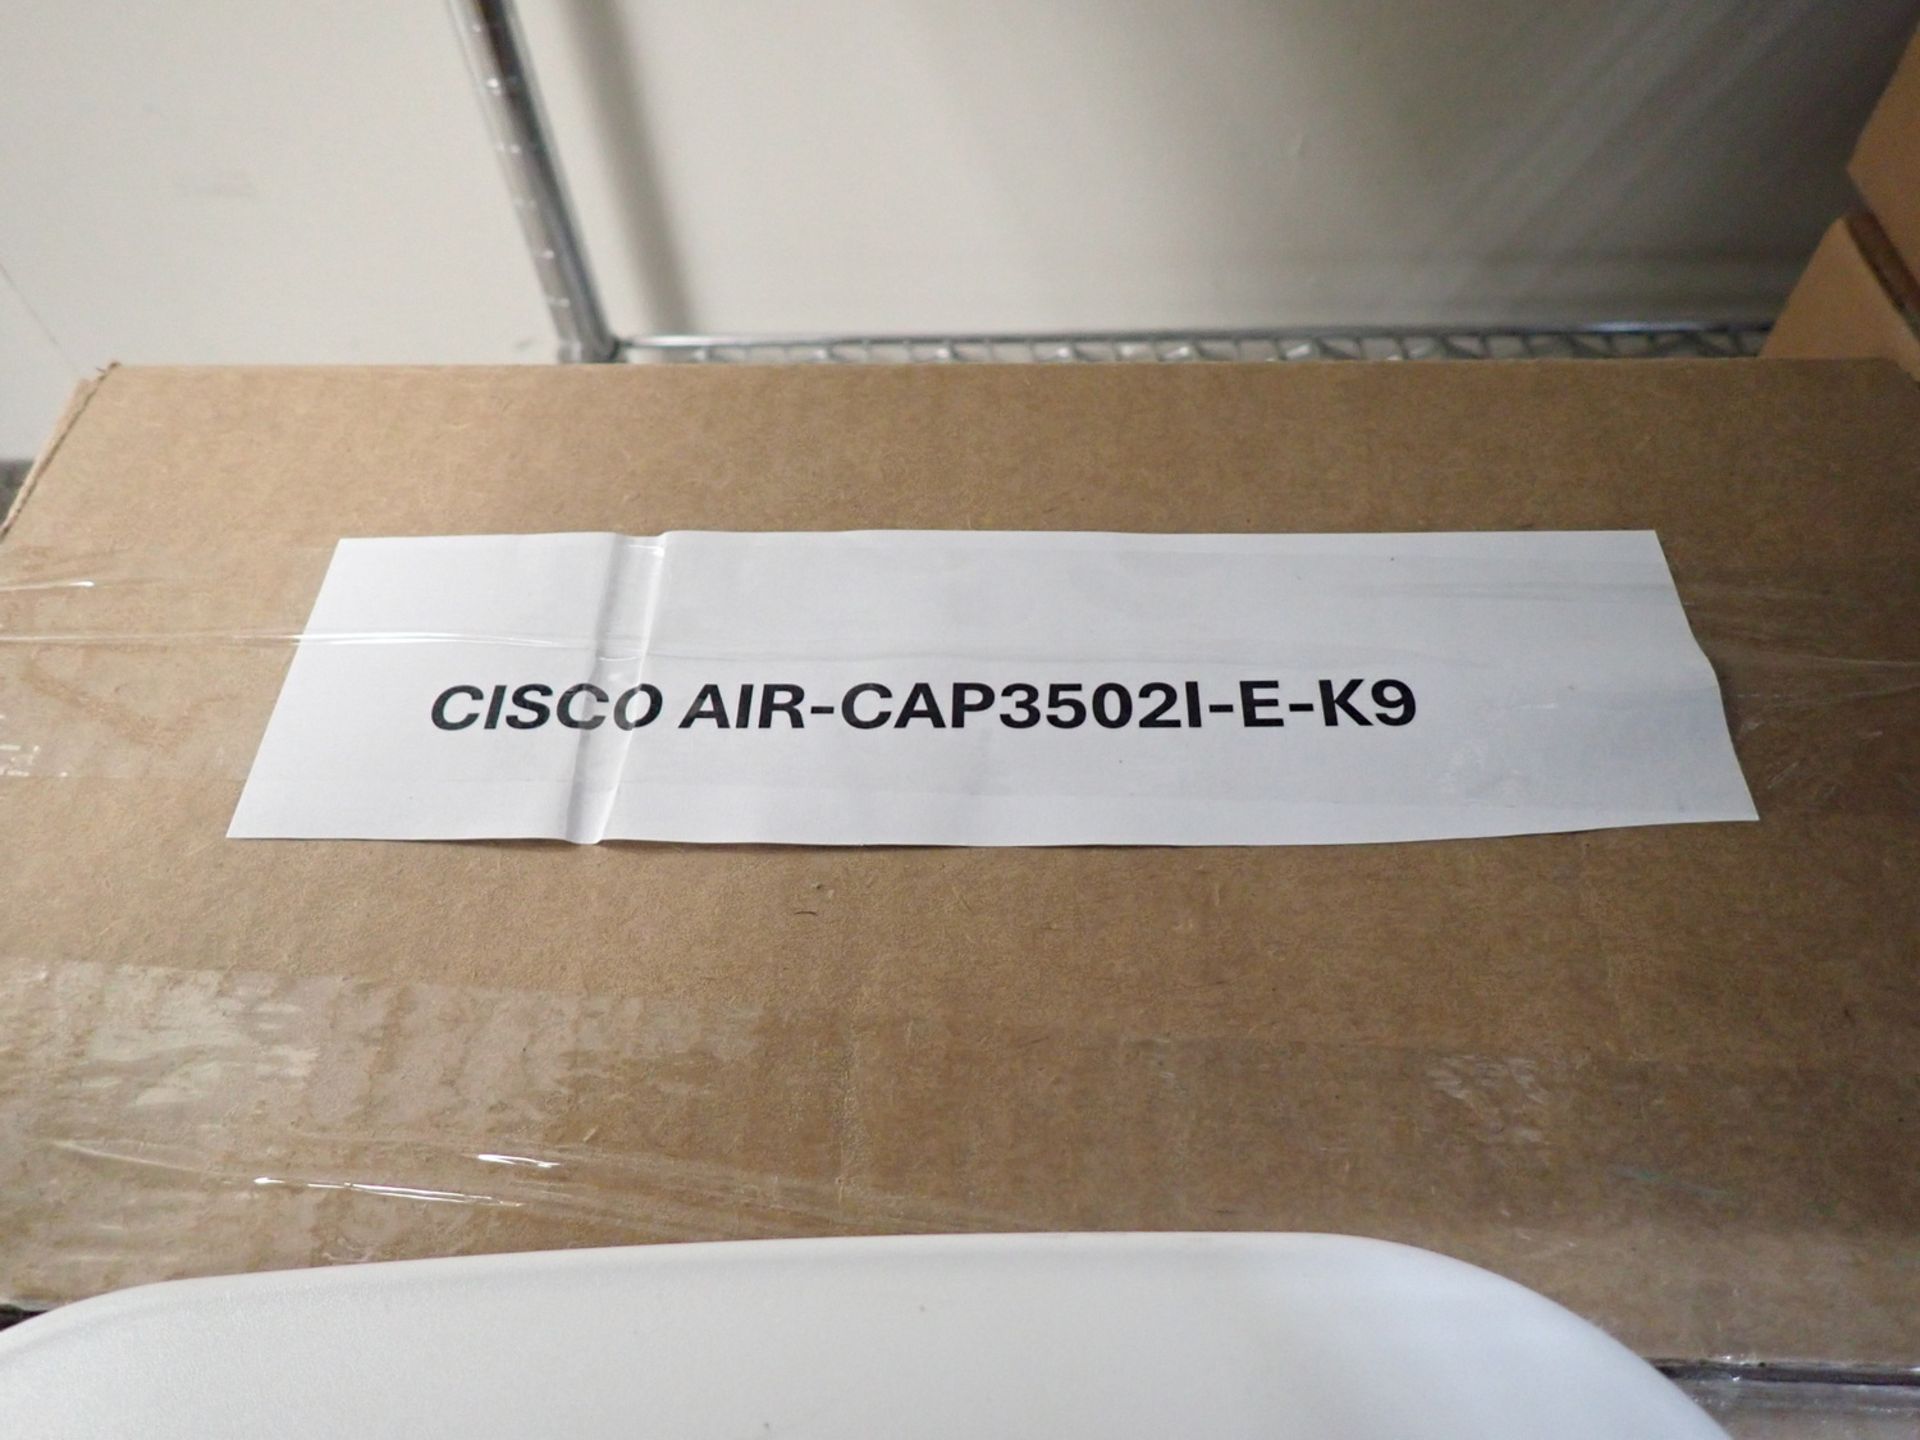 UNITS - CISCO AIR-CAP 35021-E-K9 DUAL BAND ACCESS POINT - Bild 2 aus 3